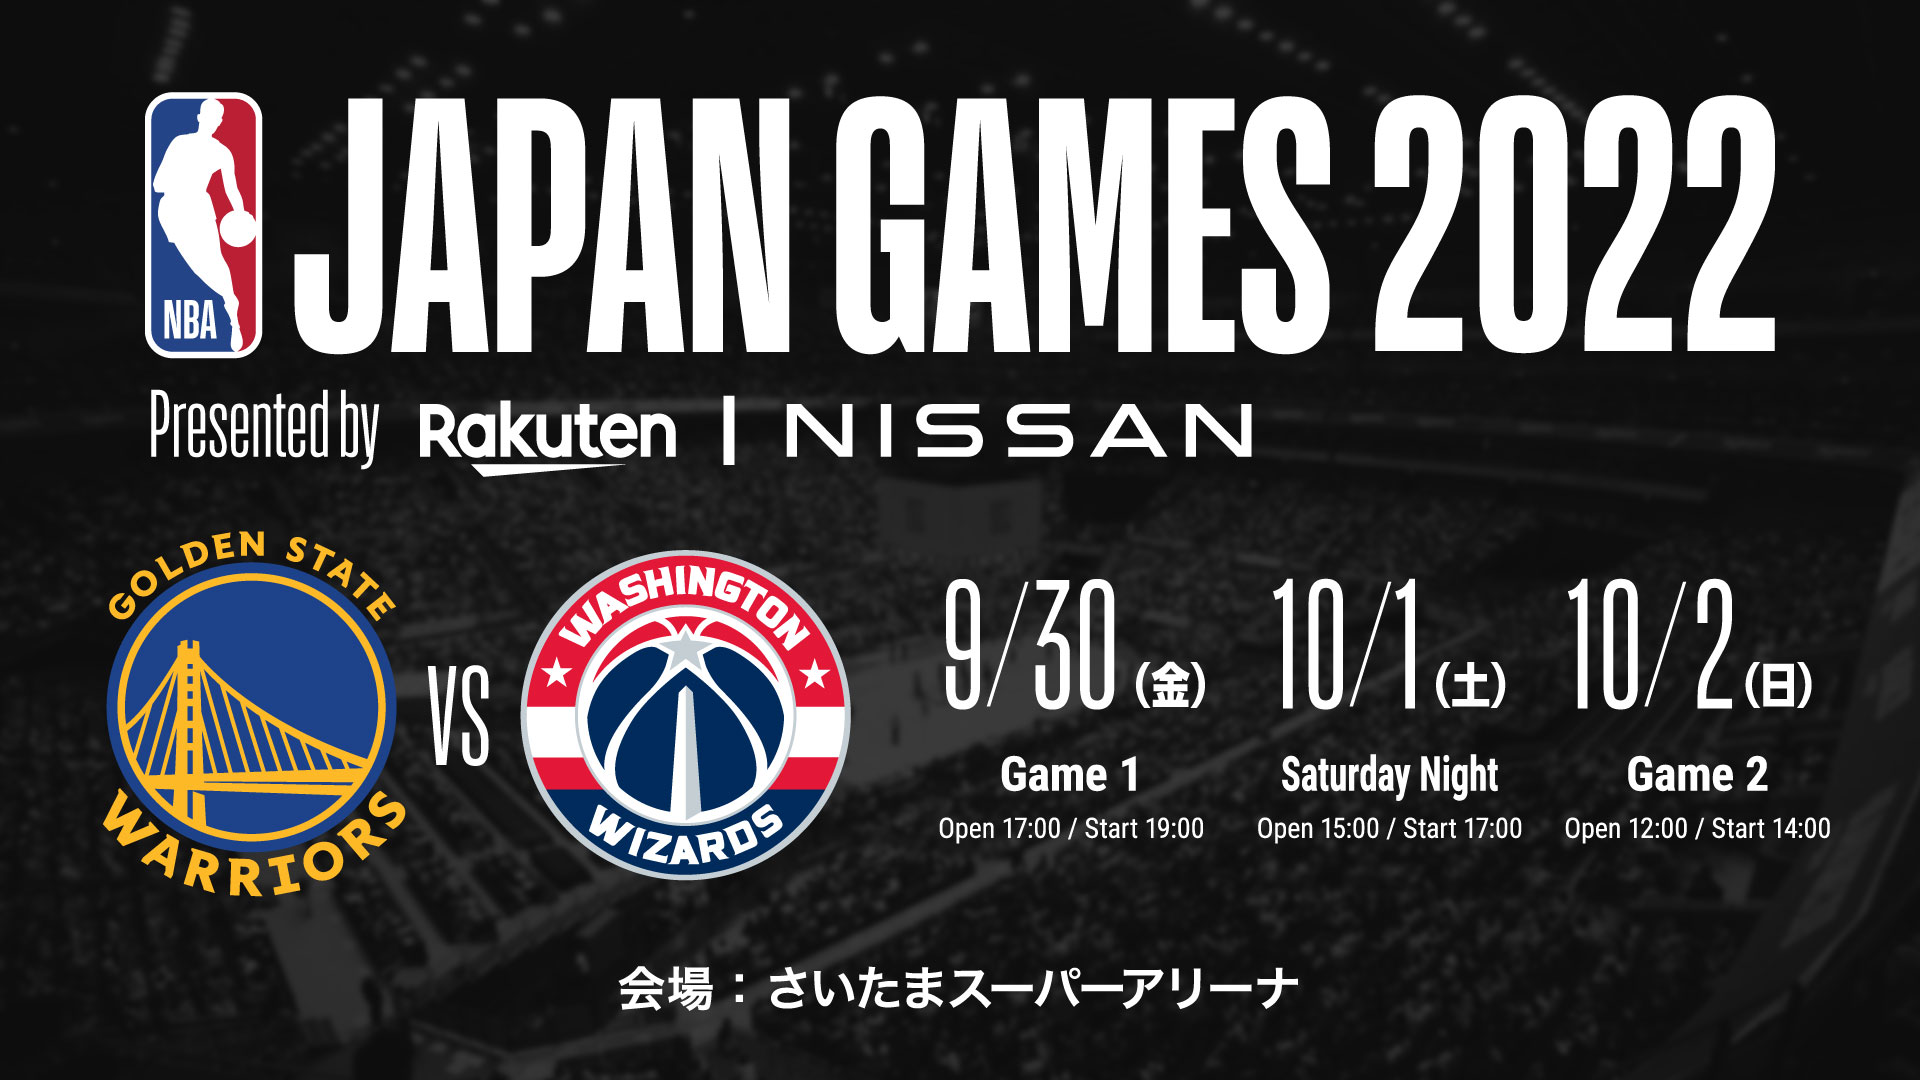 NBA JAPAN GAMES SATURDAY NIGHT 2022 チケット-